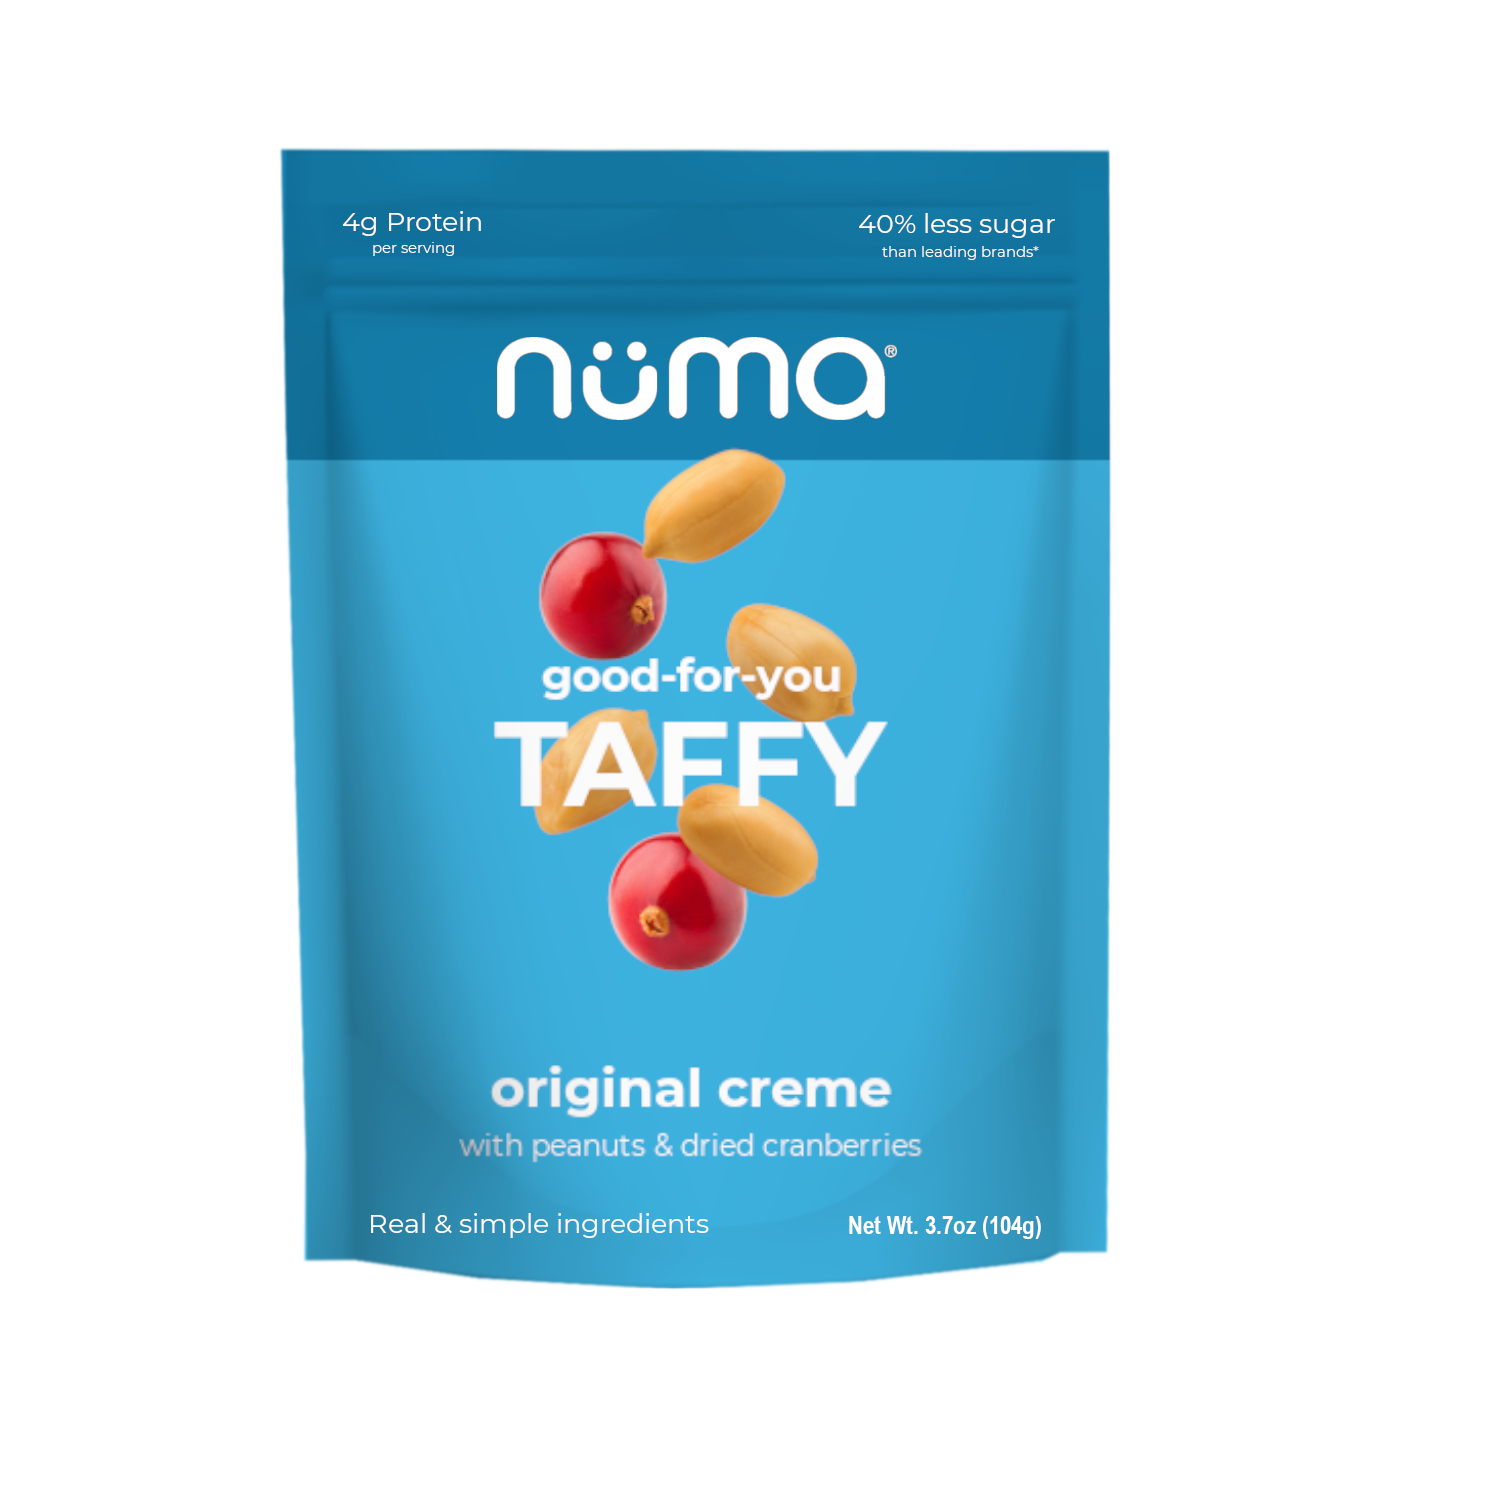 Original Creme Nougat / Taffy